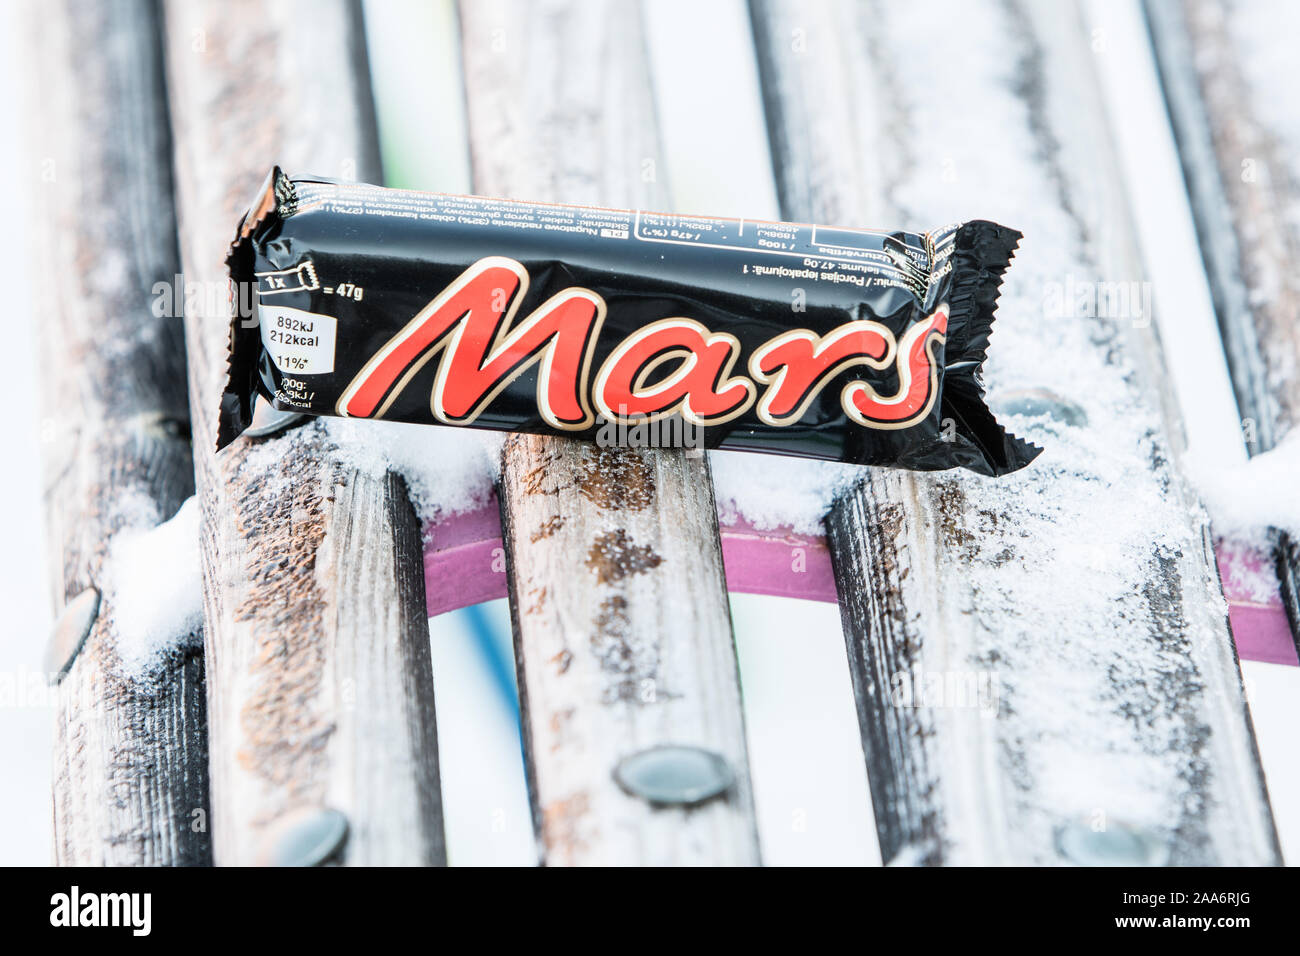 Libre de Mars chocolat bonbons, hiver, neige Banque D'Images